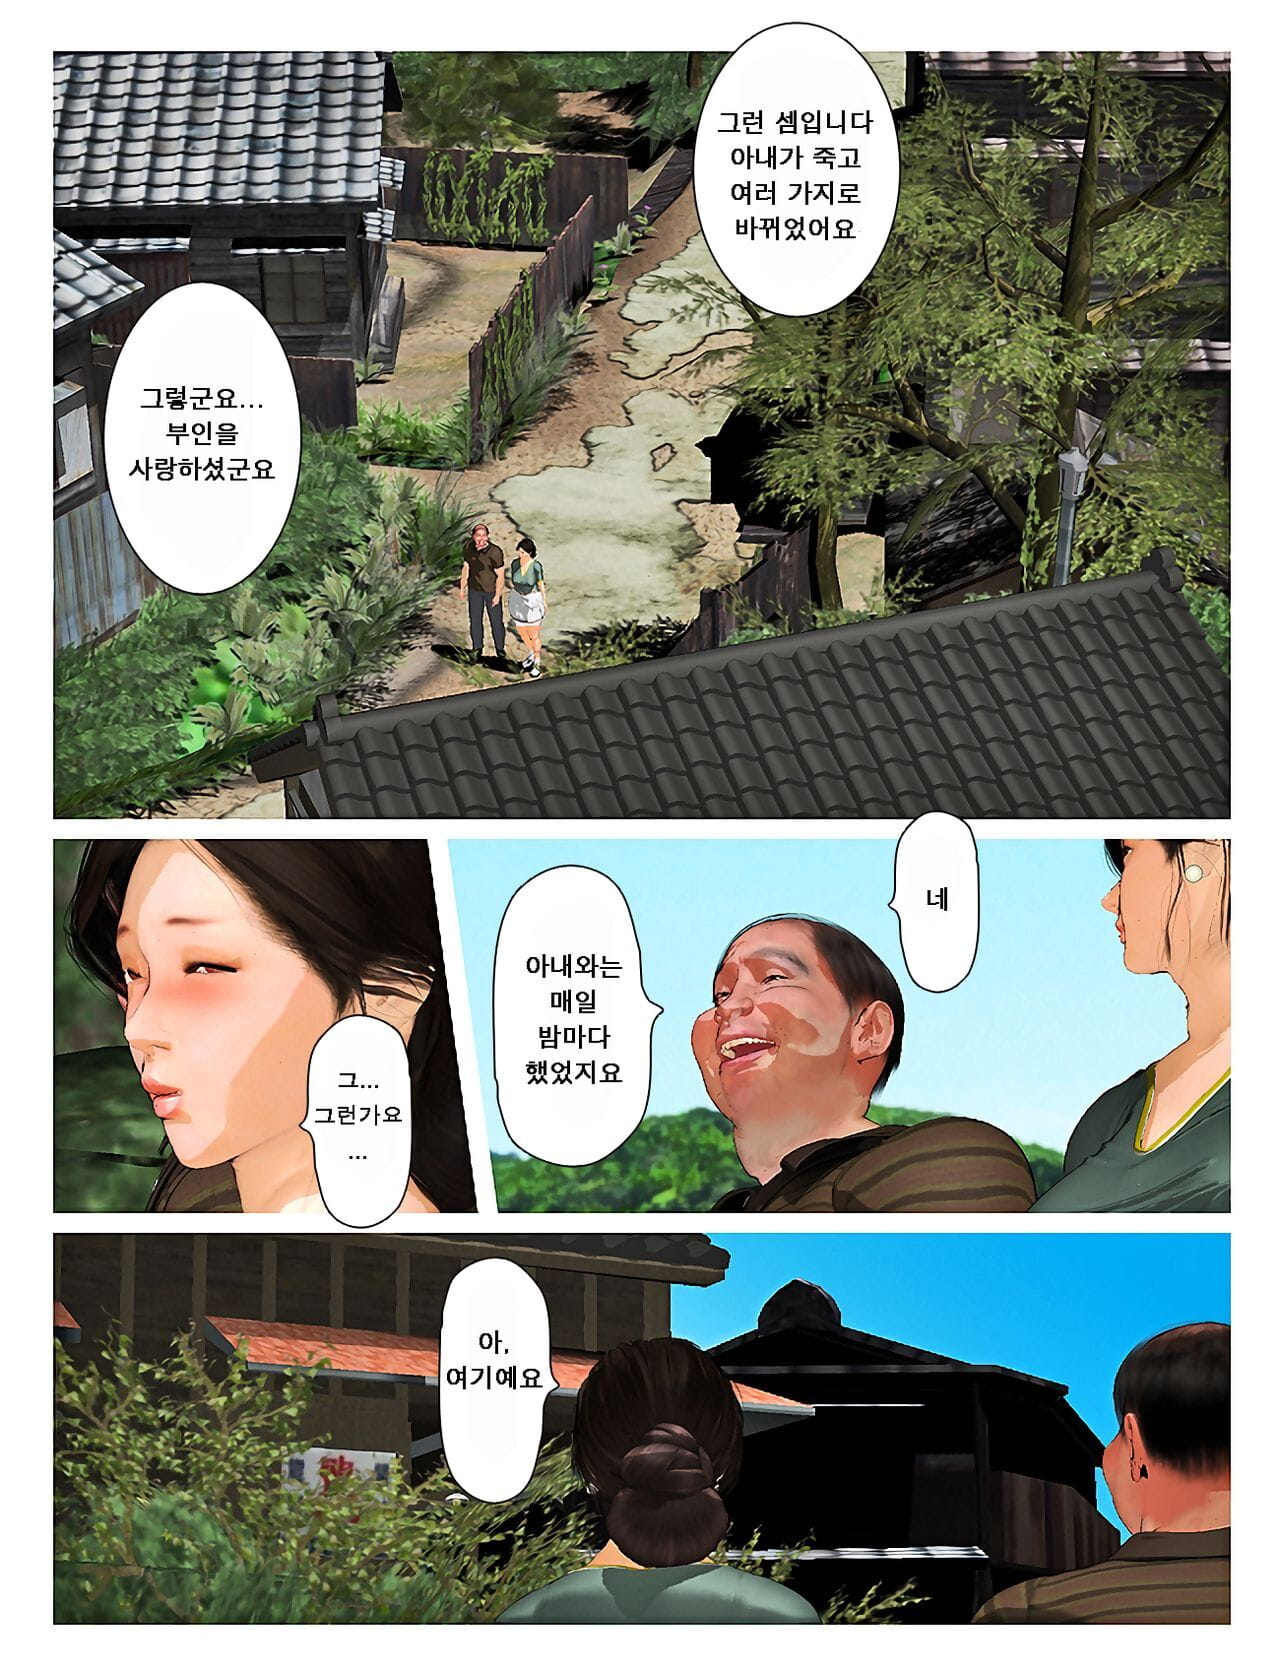 Kyou pas de misako san 2019:2 오늘의 미사코씨 2019:2 page 1